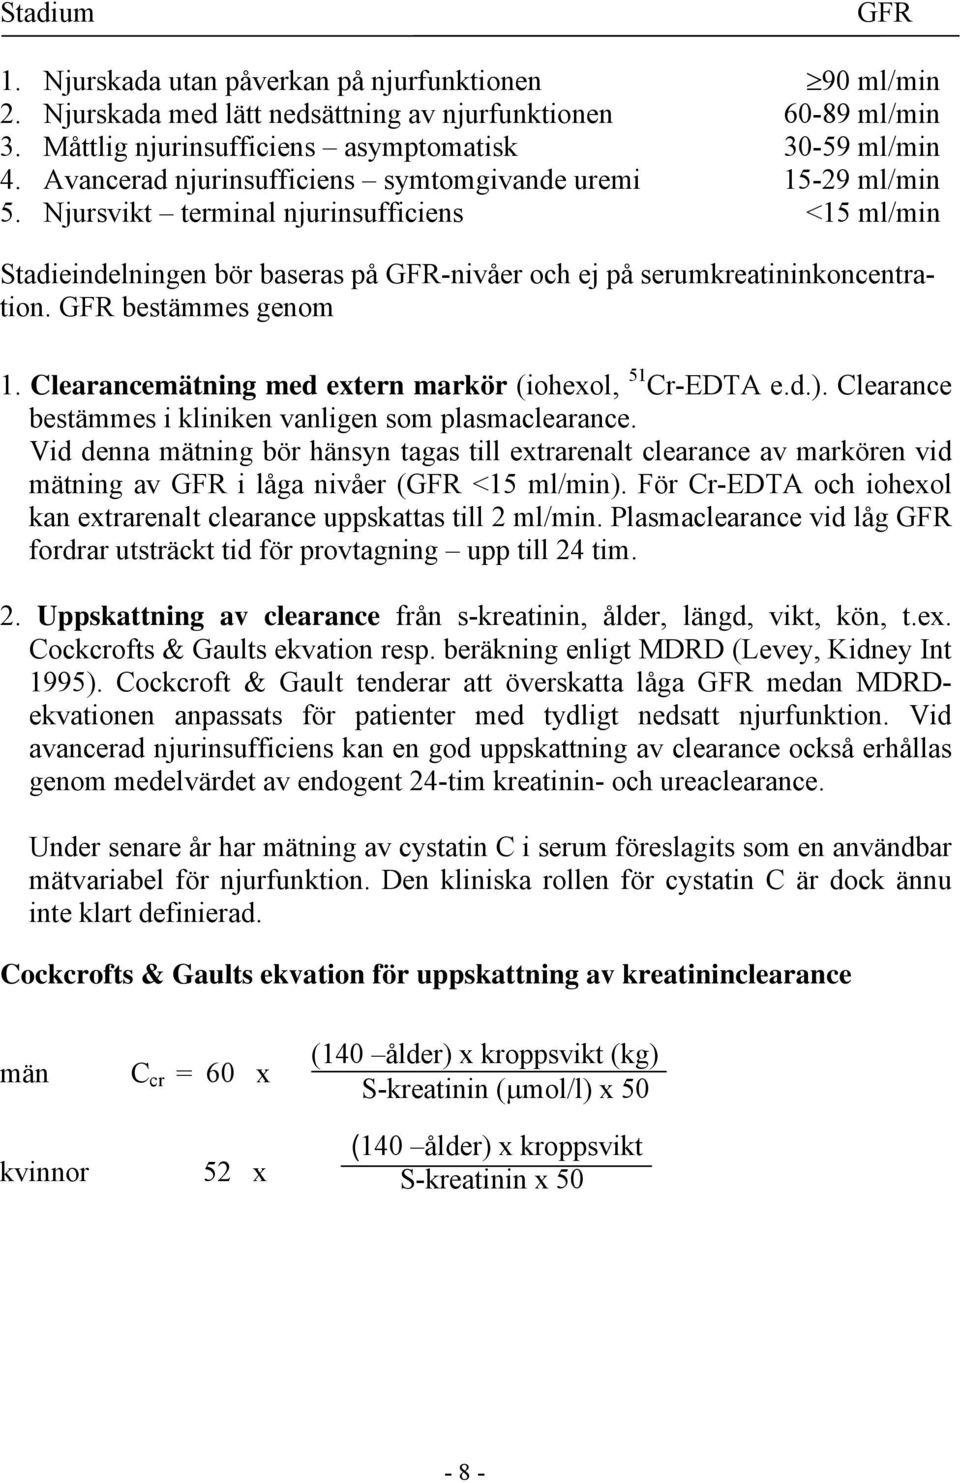 GFR bestämmes genom 1. Clearancemätning med extern markör (iohexol, 51 Cr-EDTA e.d.). Clearance bestämmes i kliniken vanligen som plasmaclearance.